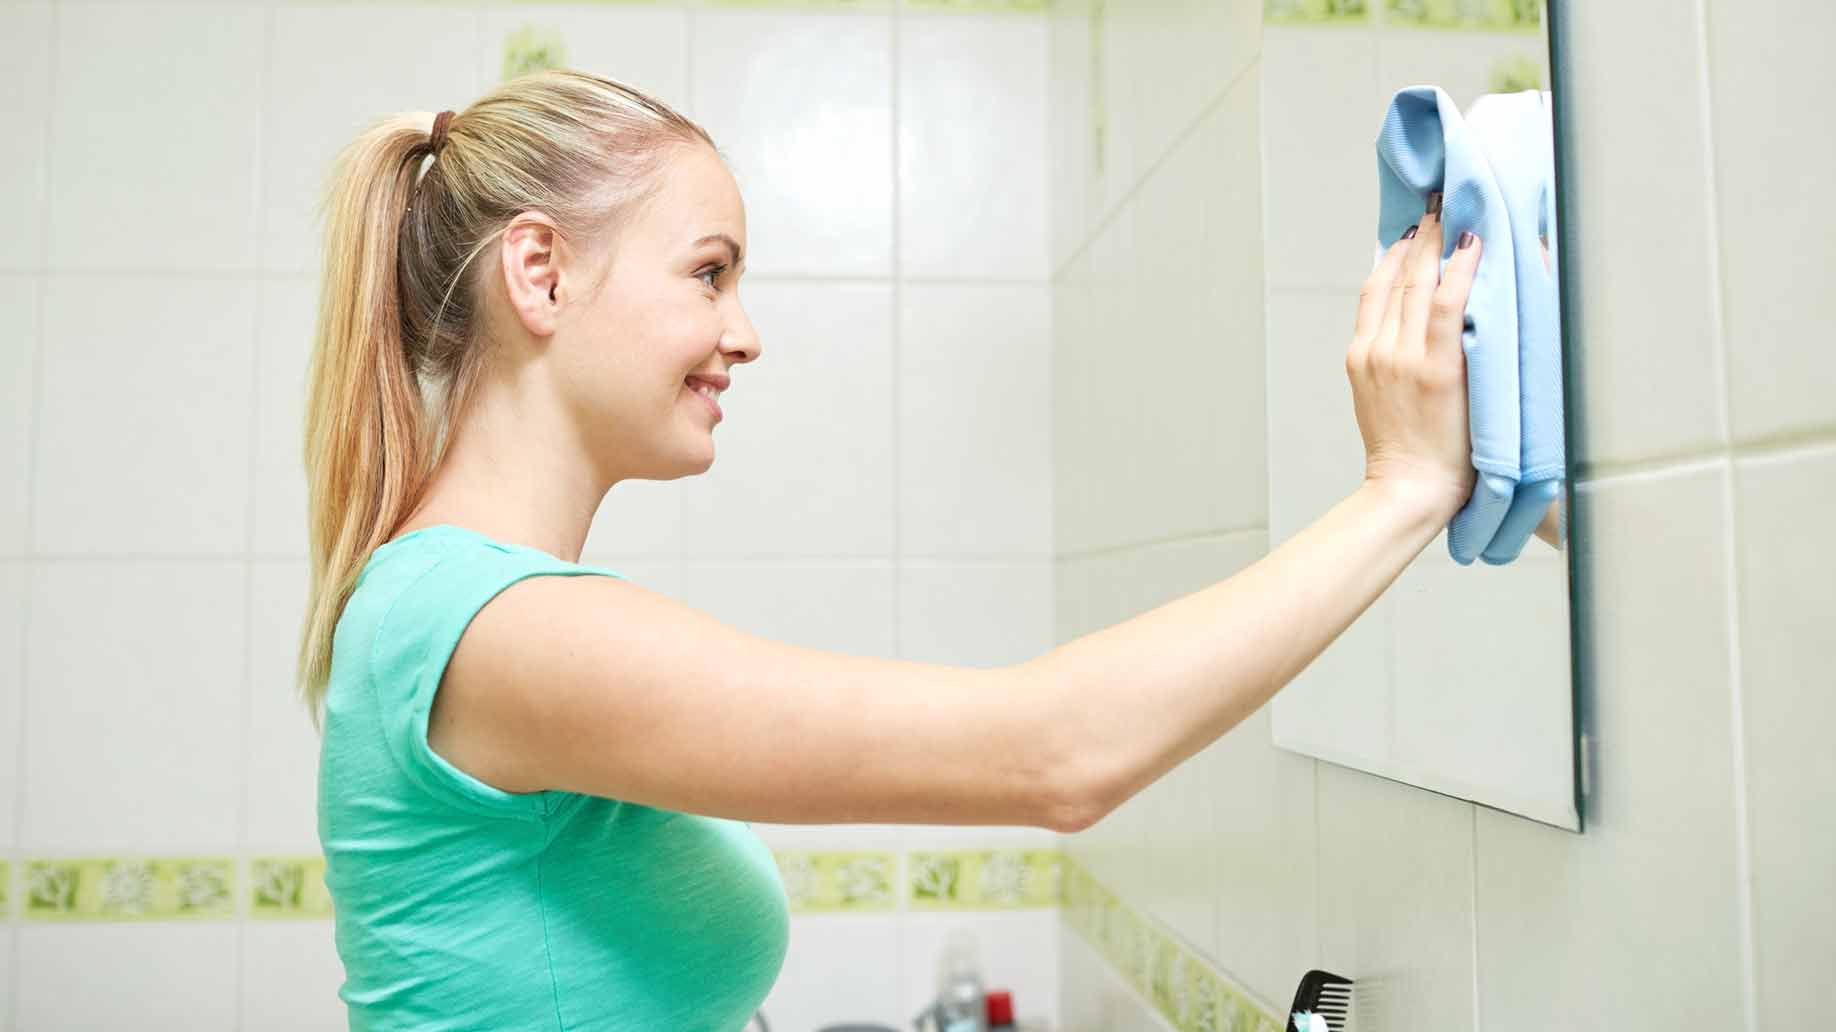 Как помыть зеркало без разводов - wikihow